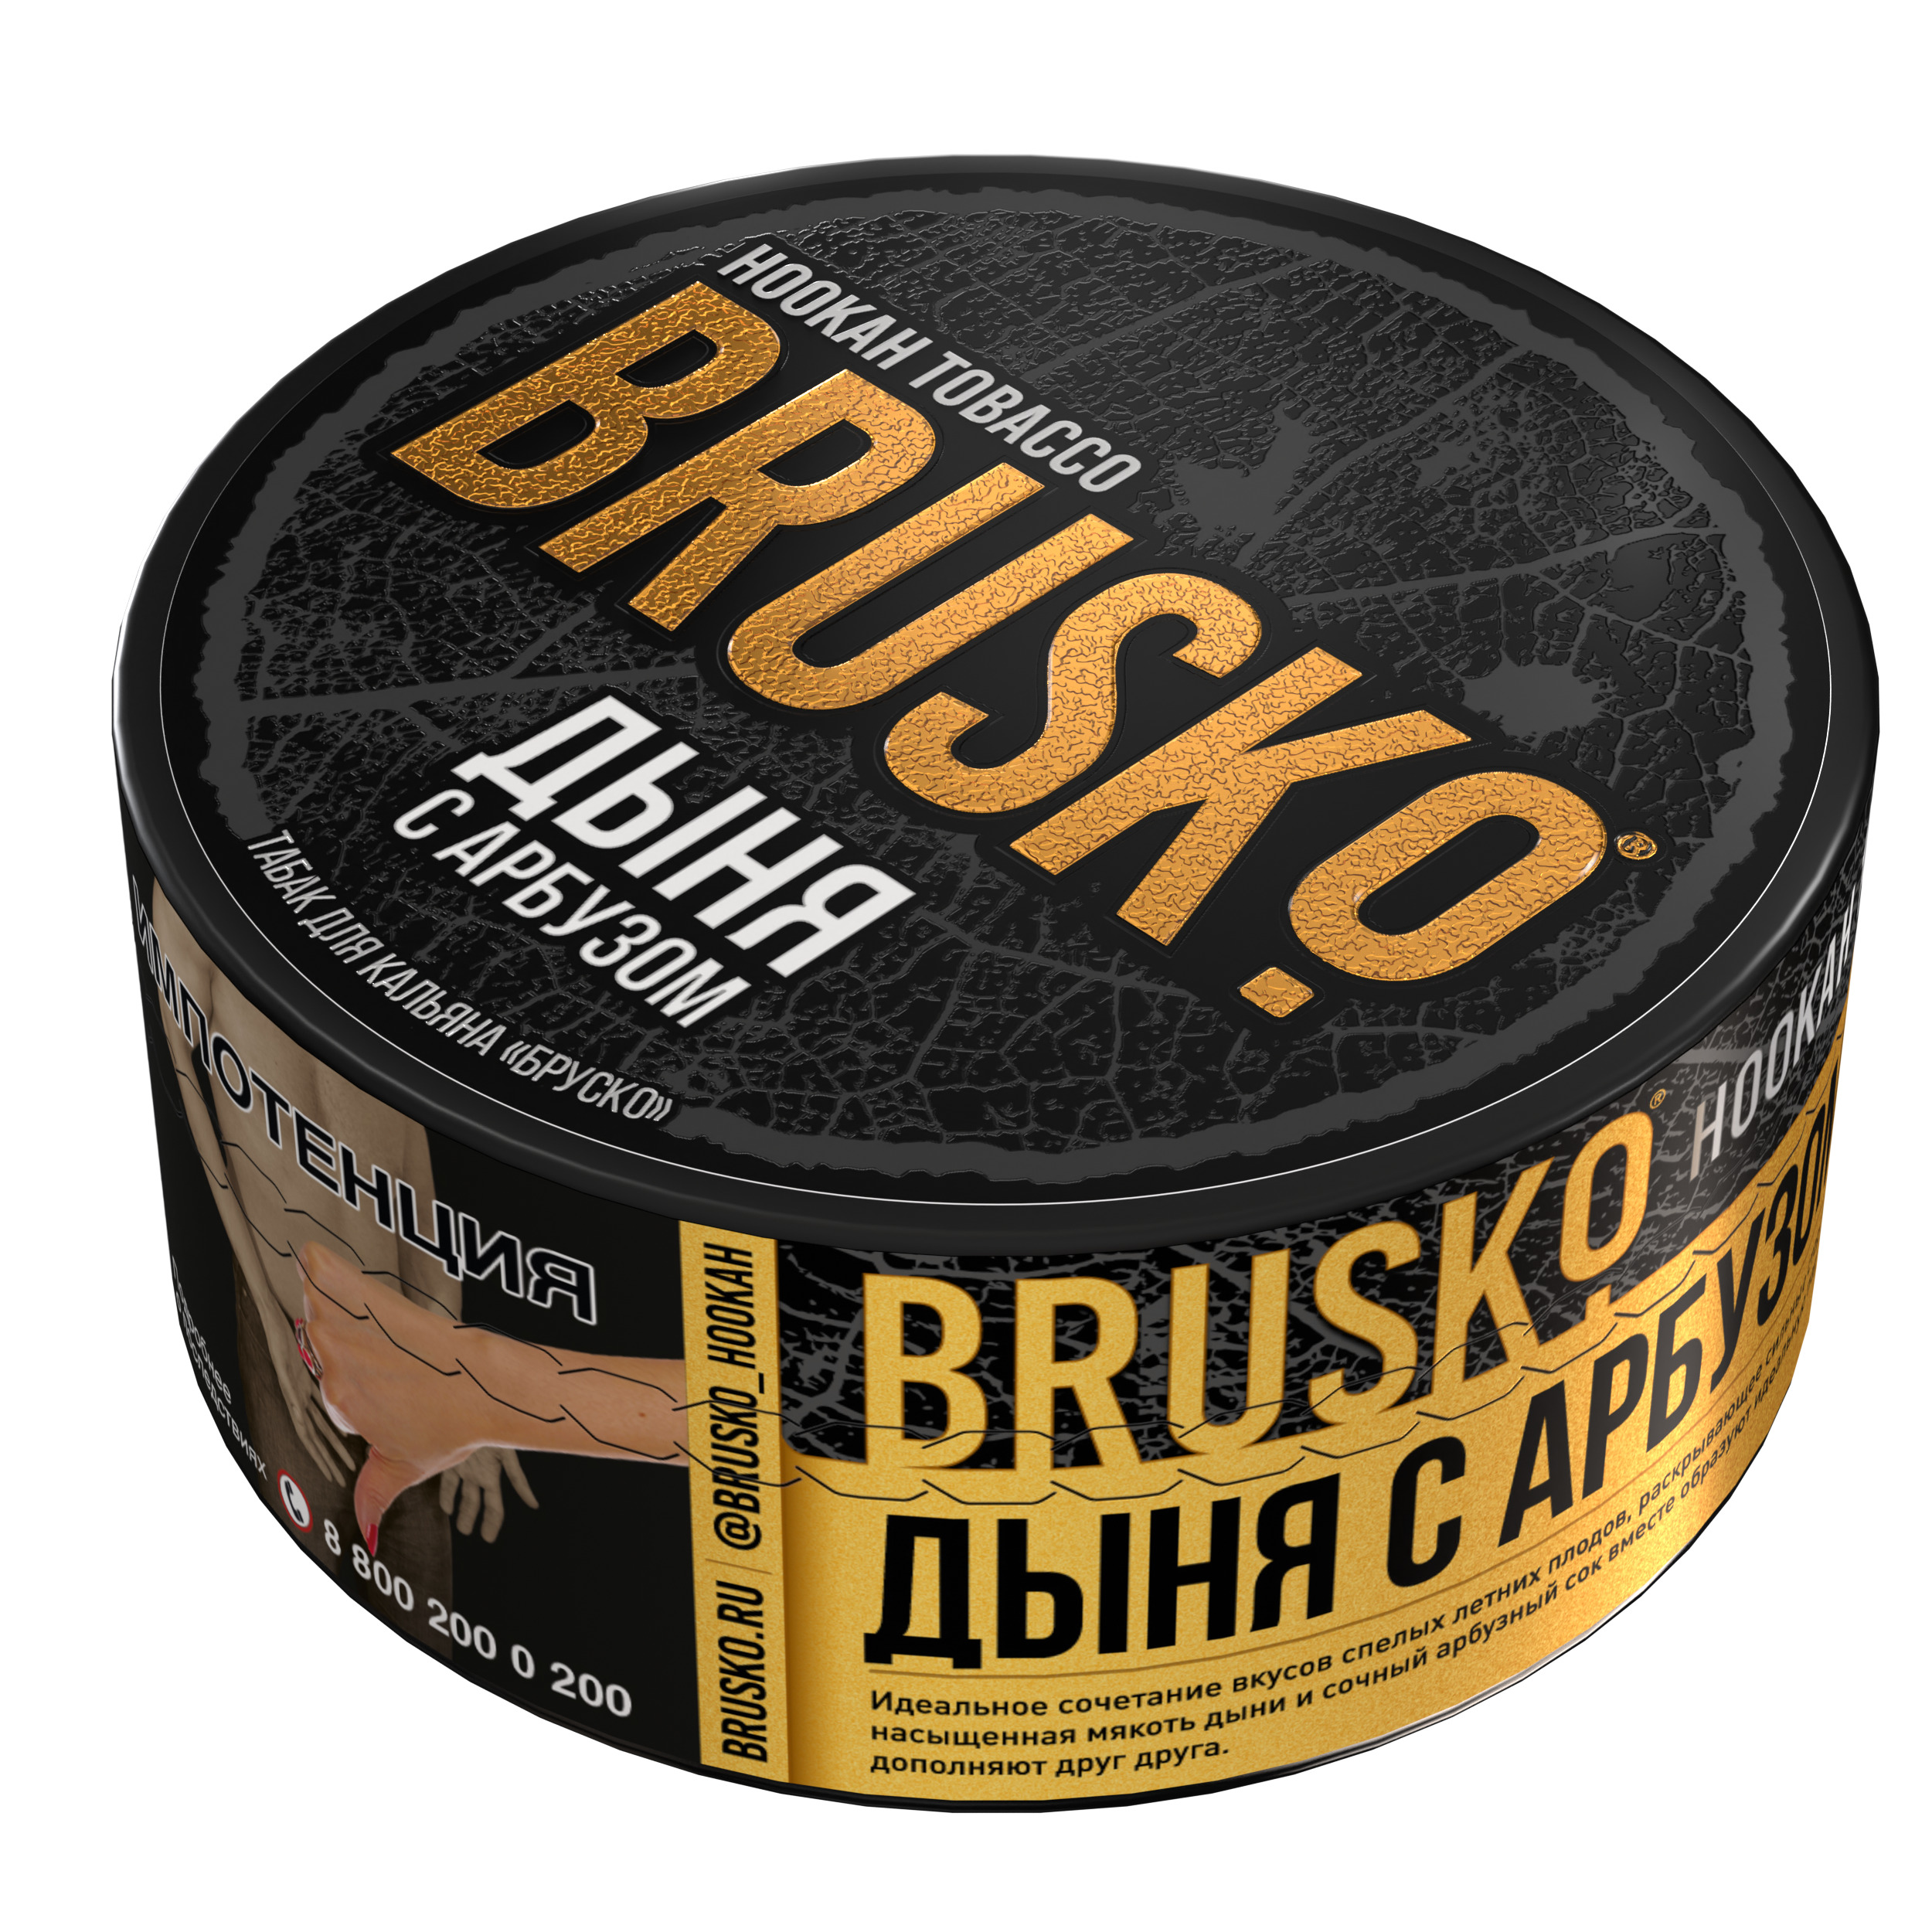 Табак для кальяна BRUSKO, с ароматом дыни с арбузом, 125 г.